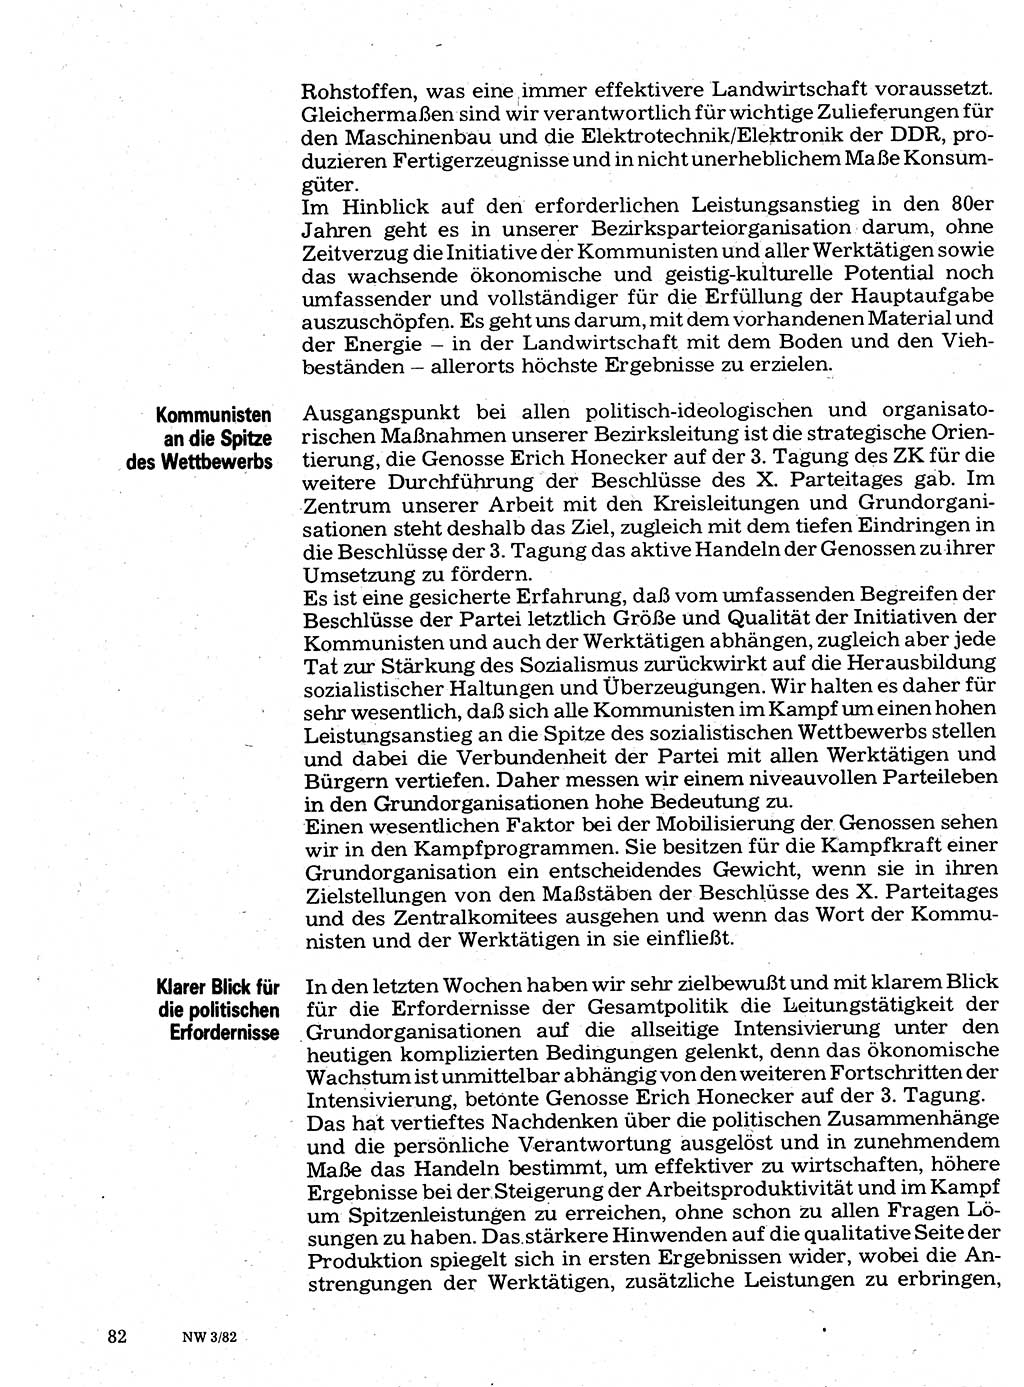 Neuer Weg (NW), Organ des Zentralkomitees (ZK) der SED (Sozialistische Einheitspartei Deutschlands) für Fragen des Parteilebens, 37. Jahrgang [Deutsche Demokratische Republik (DDR)] 1982, Seite 82 (NW ZK SED DDR 1982, S. 82)